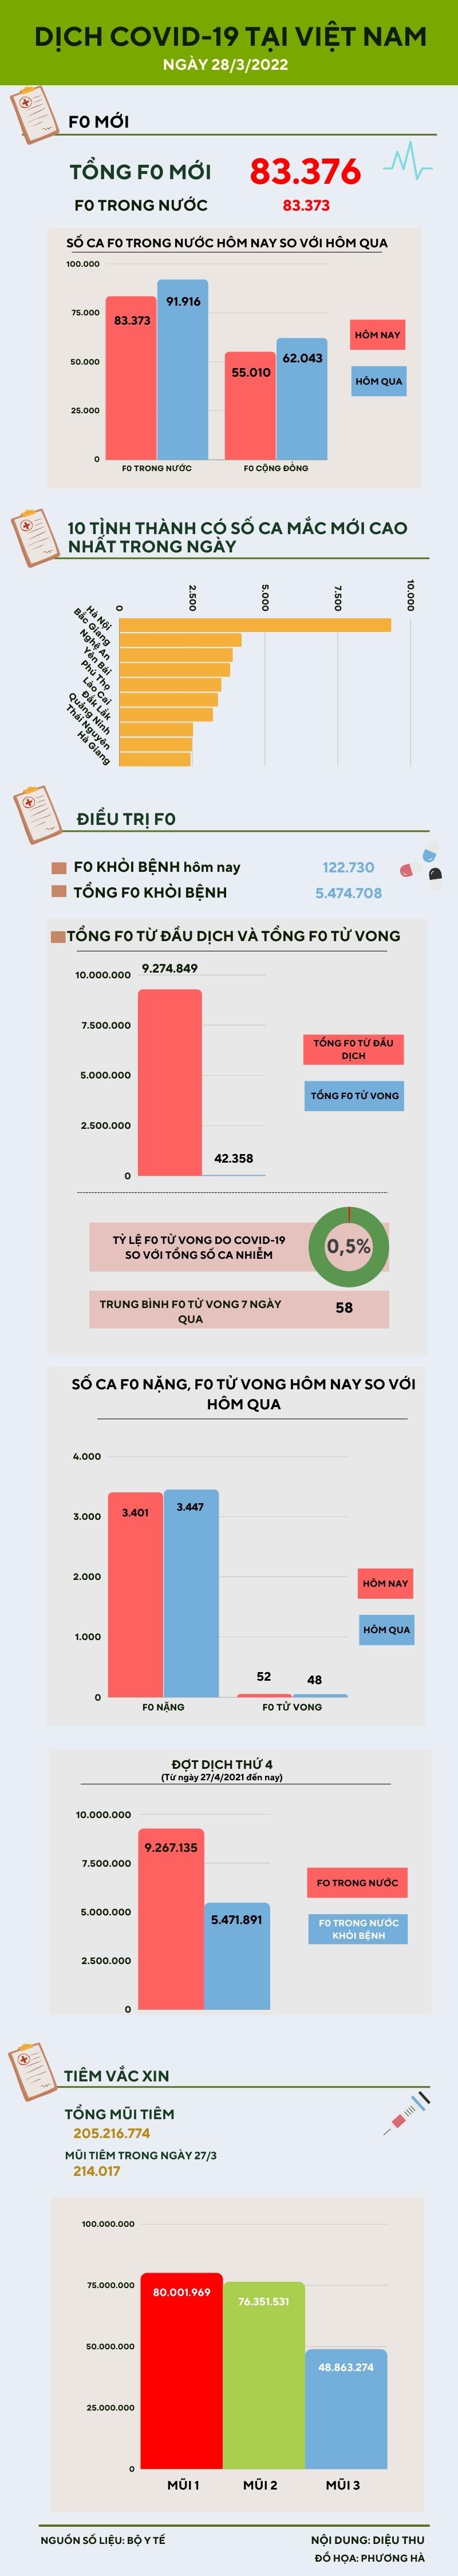 Ngày 28/3: Ghi nhận 83.373 ca COVID-19 trong nước, Hà Nội bổ sung 180.000 ca - 1